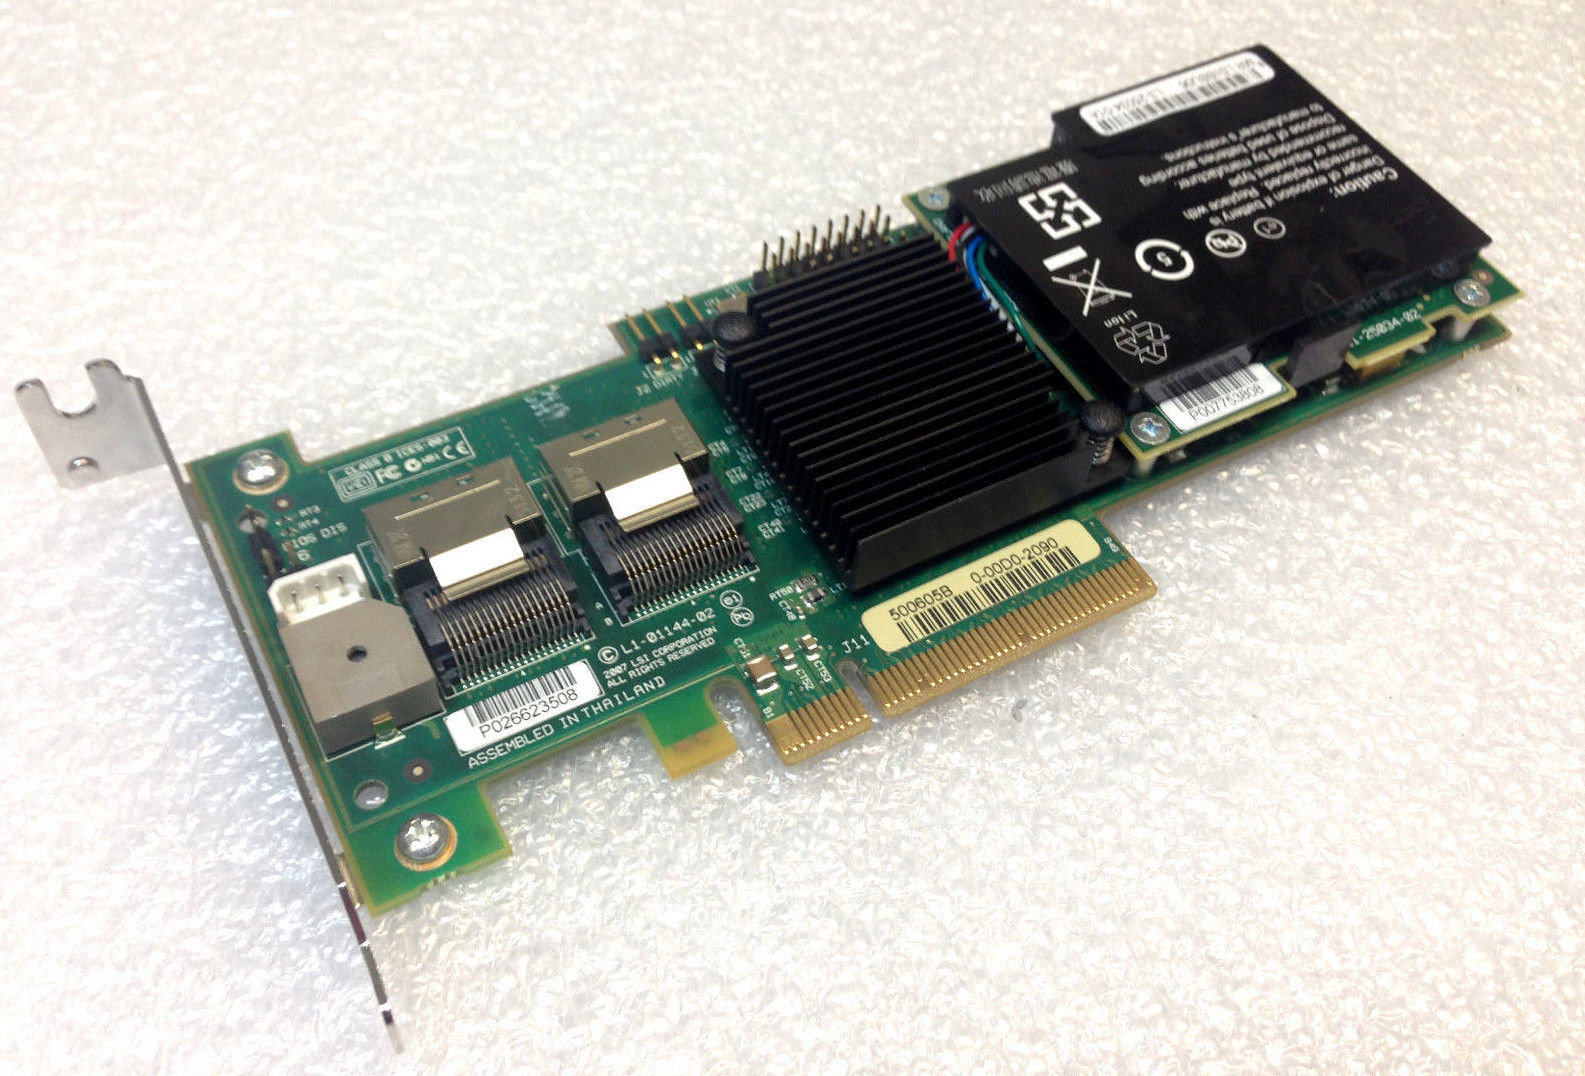 Lsi Logic Megaraid SAS PCI-E Card (8708EM2)